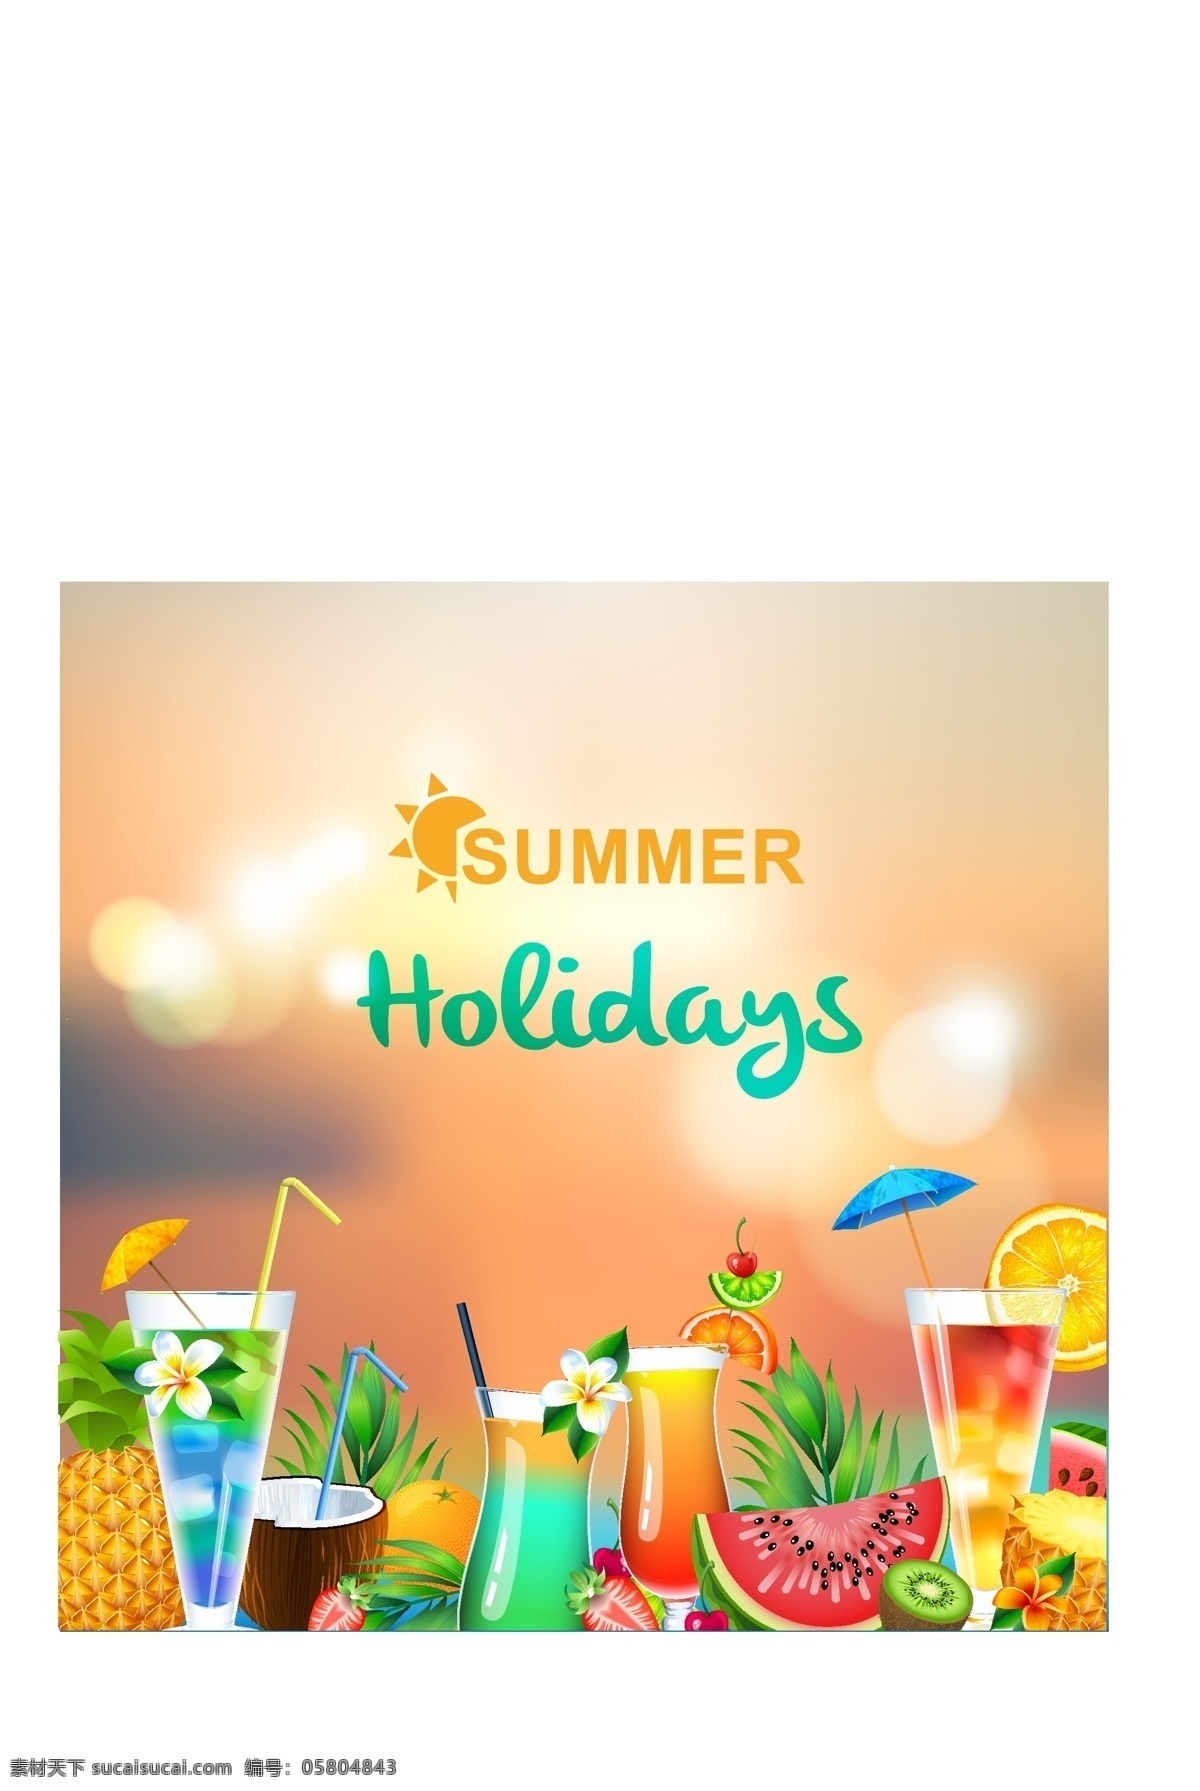 夏季饮料 夏天 悠乐假期 假期 饮料背景 夏威夷